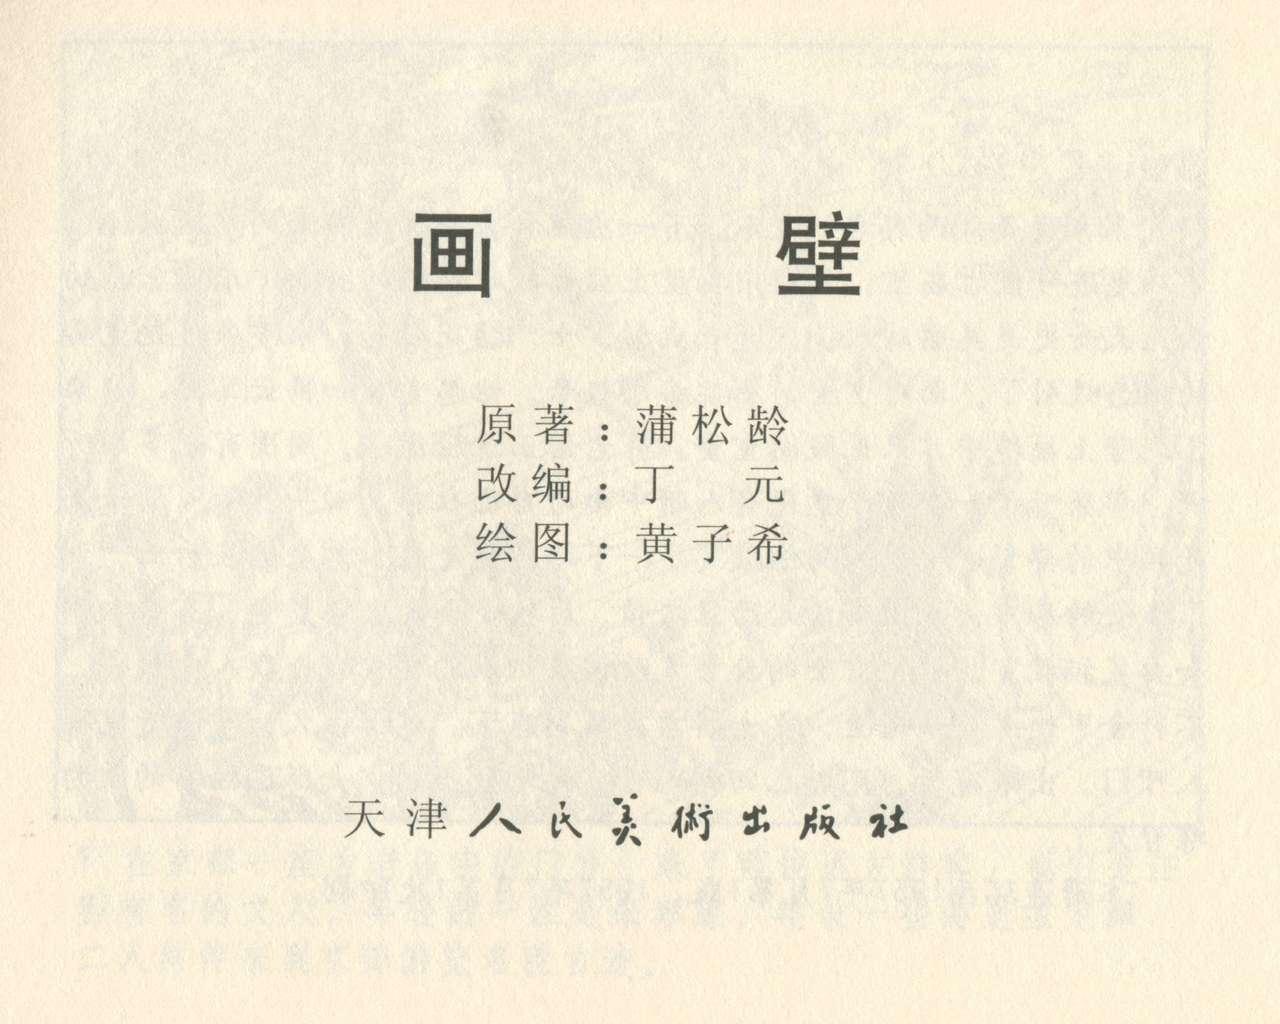 聊斋志异 张玮等绘 天津人民美术出版社 卷二十一 ~ 三十 2